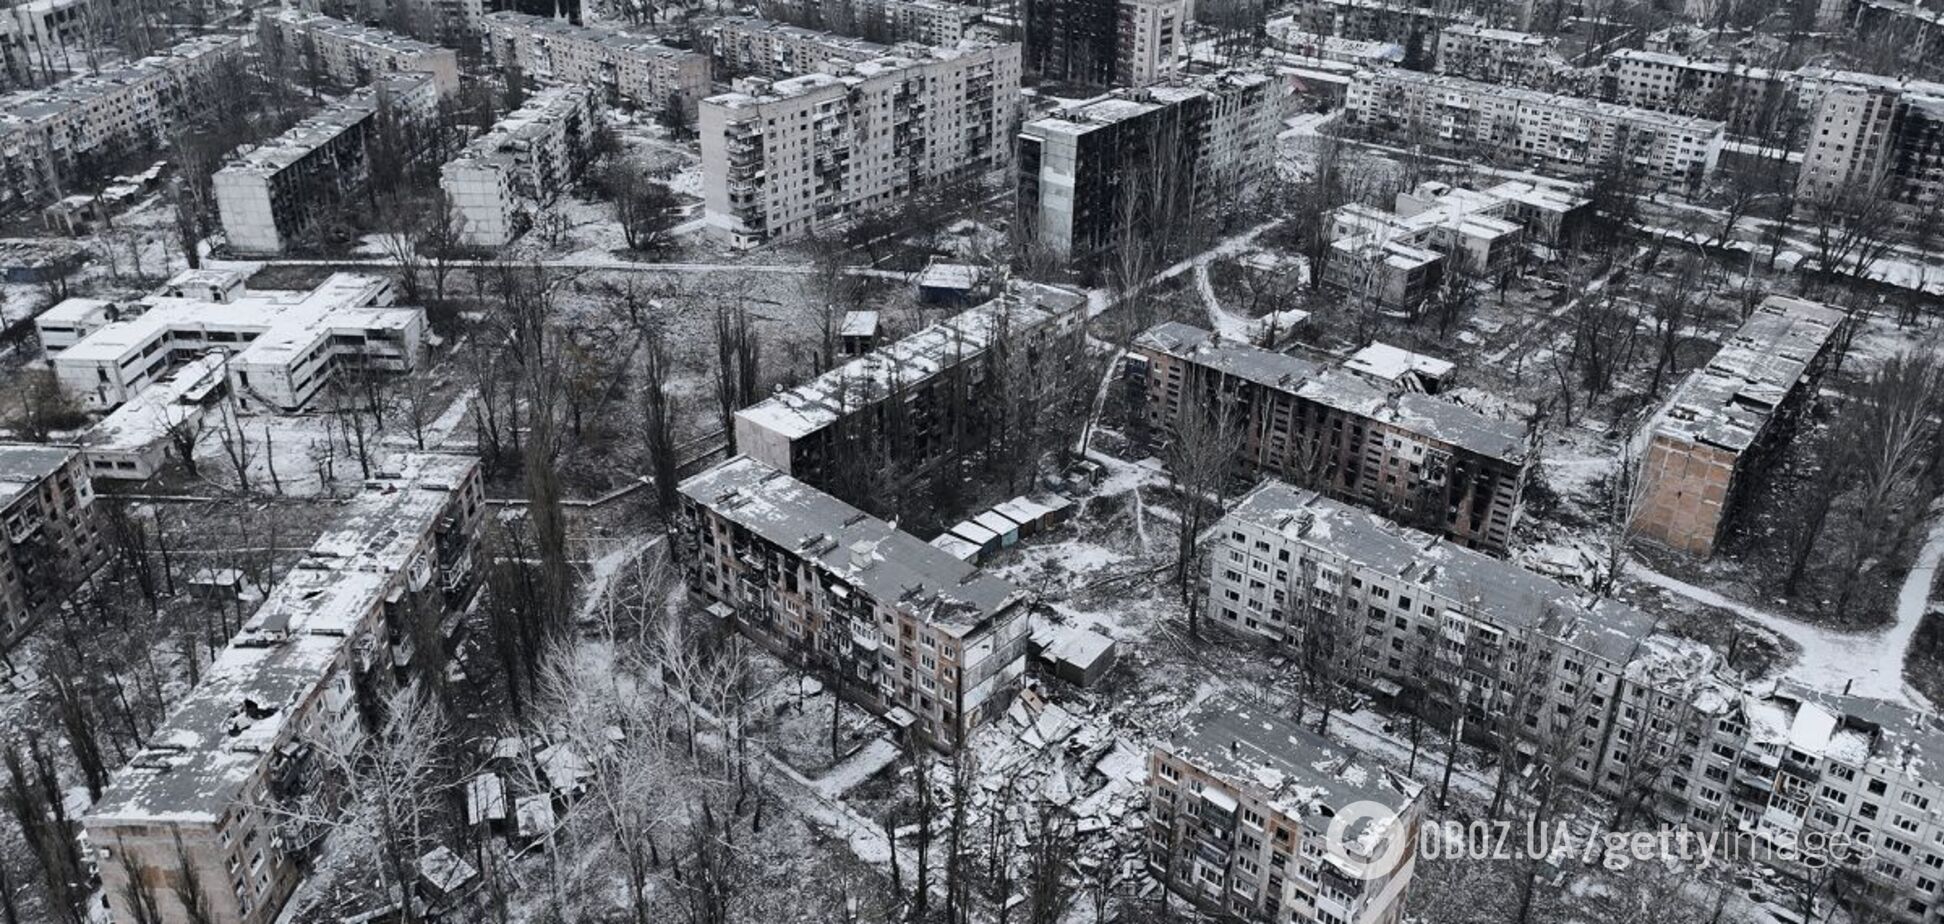 'Какая атмосфера! Нет суеты': российские оккупанты похвастались видео из разрушенной Авдеевки